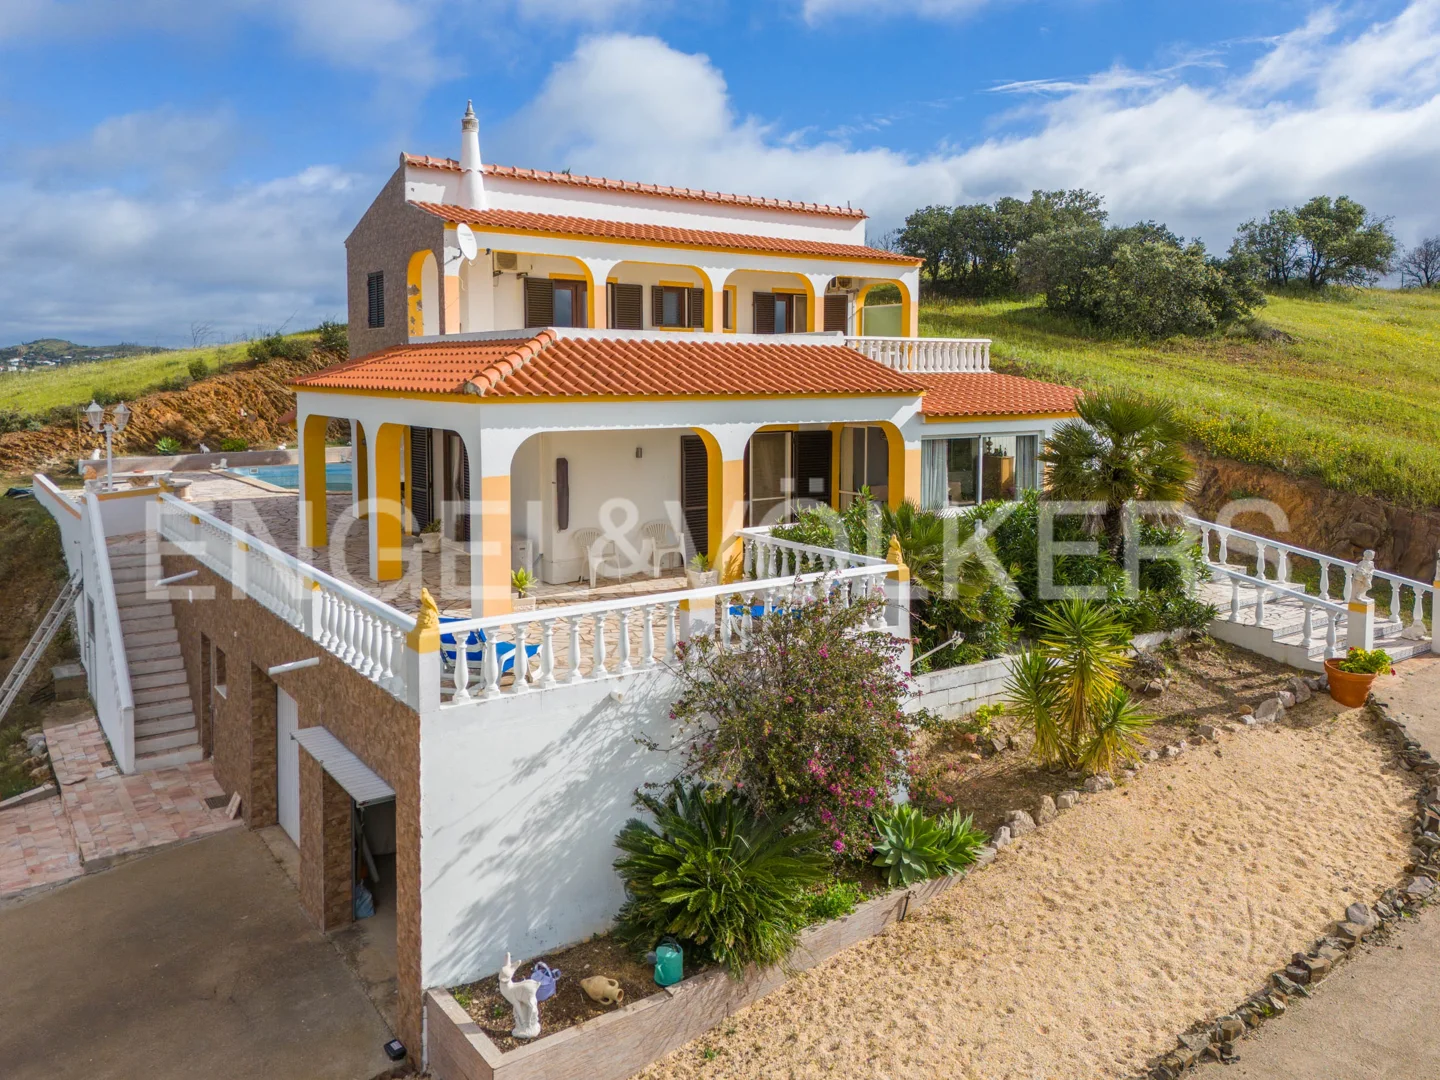 Detached 3-bedroom villa with sea view